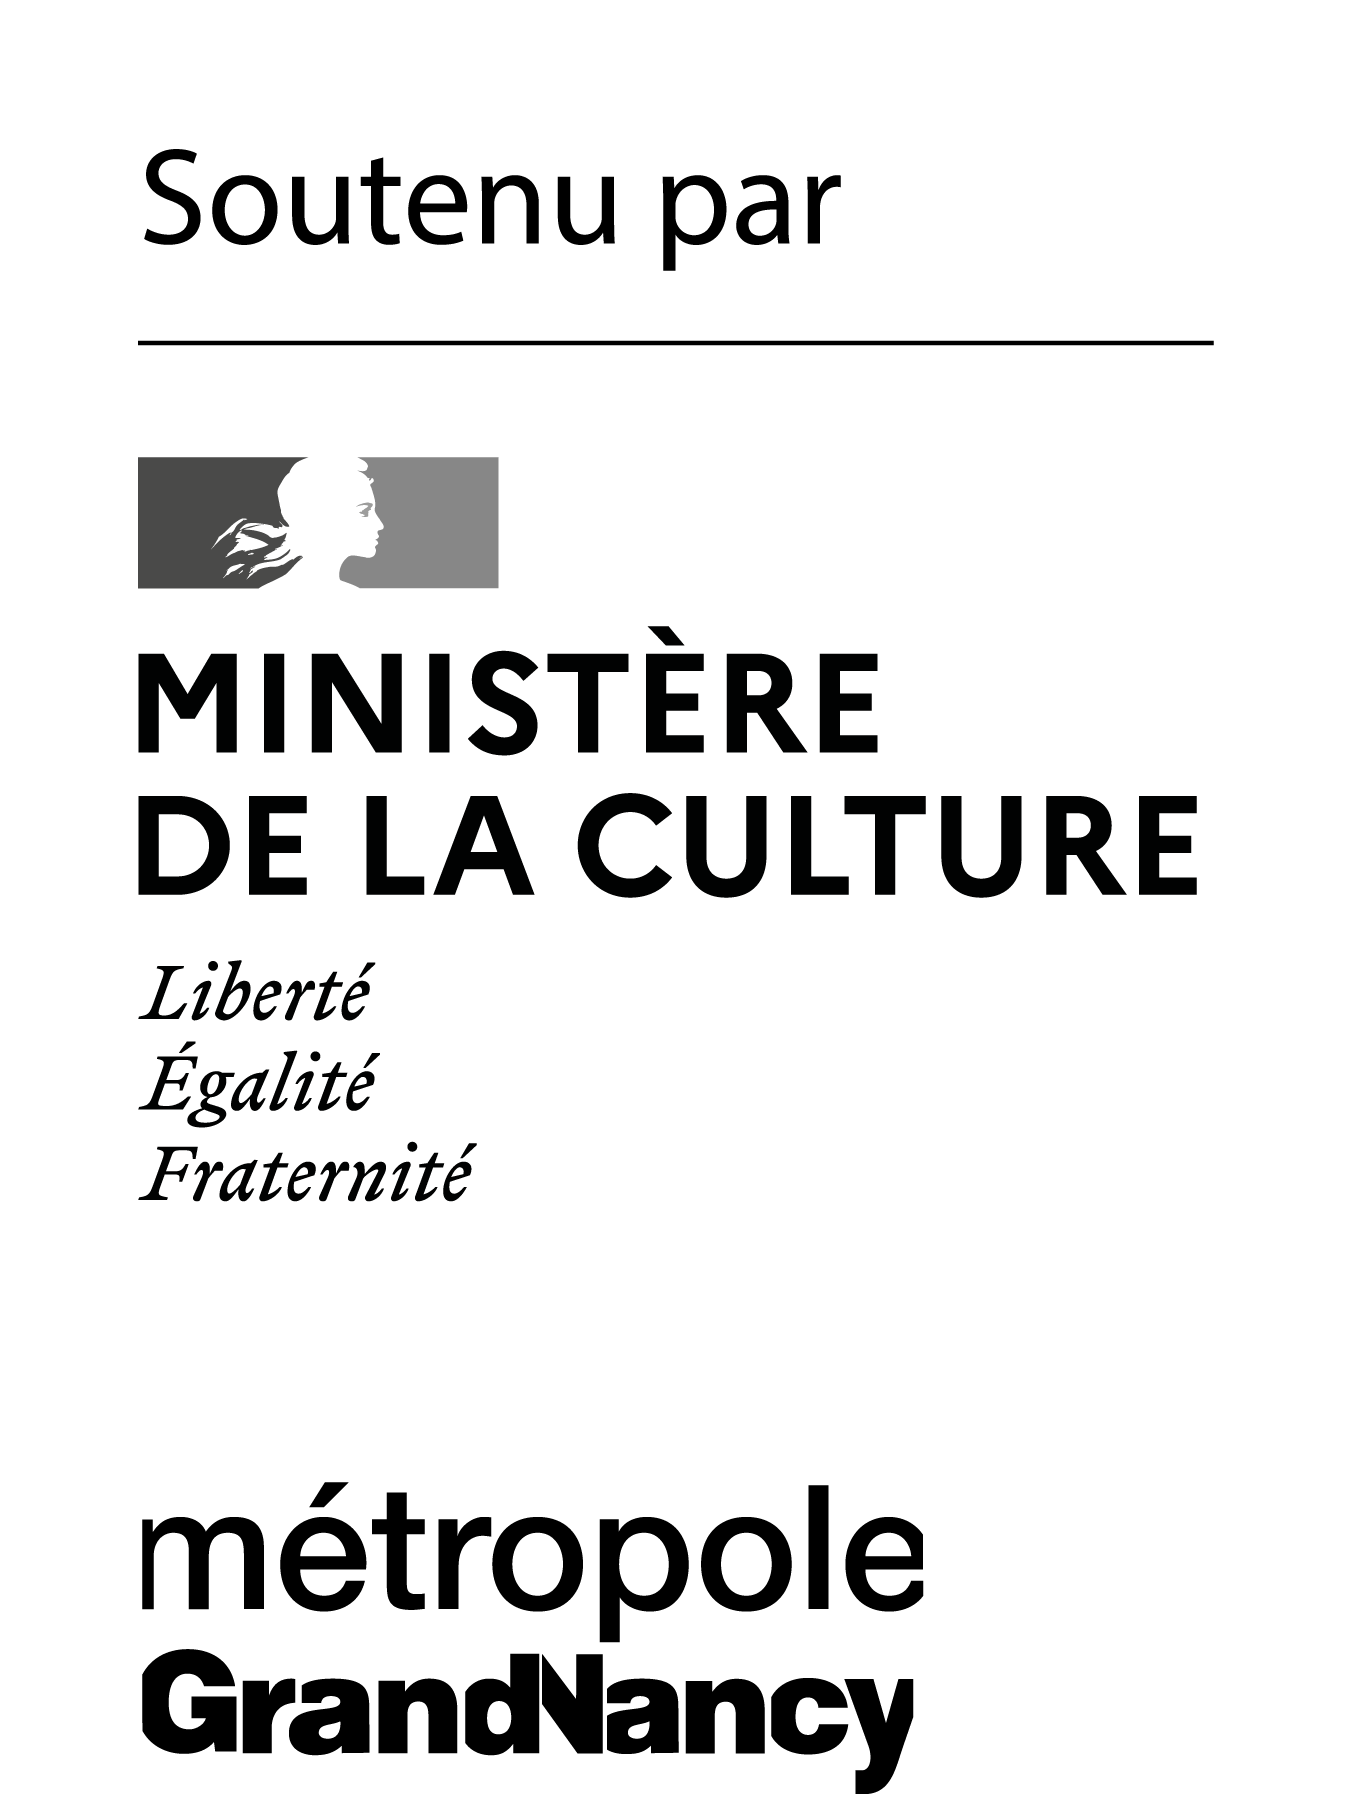 Soutenu par le Ministère de la culture, Métropole du Grand Nancy